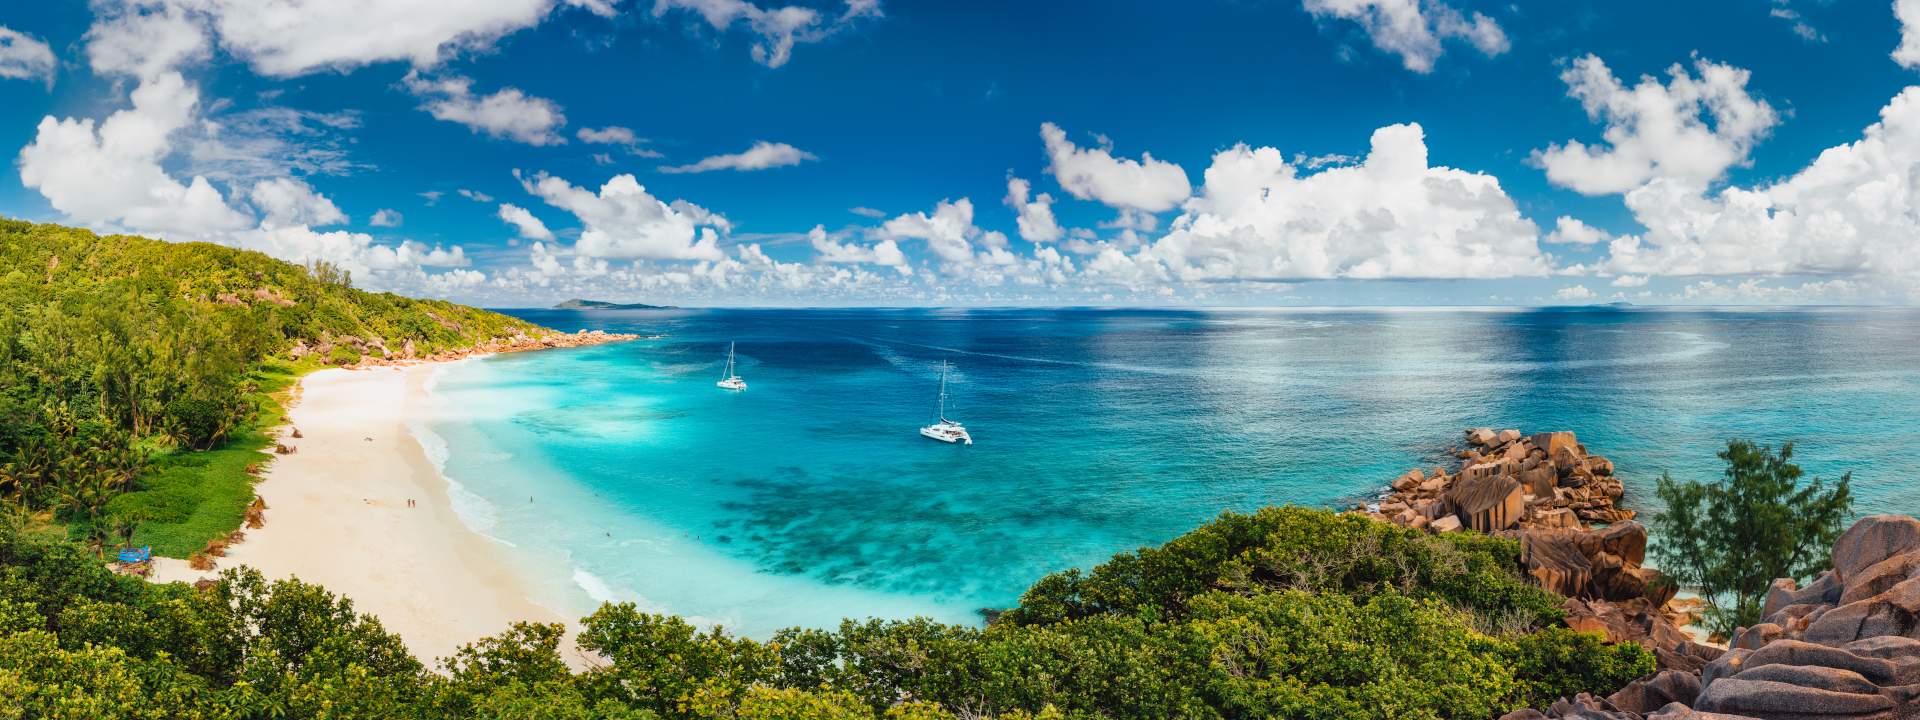 Le Seychelles, uno degli arcipelaghi più belli del mondo